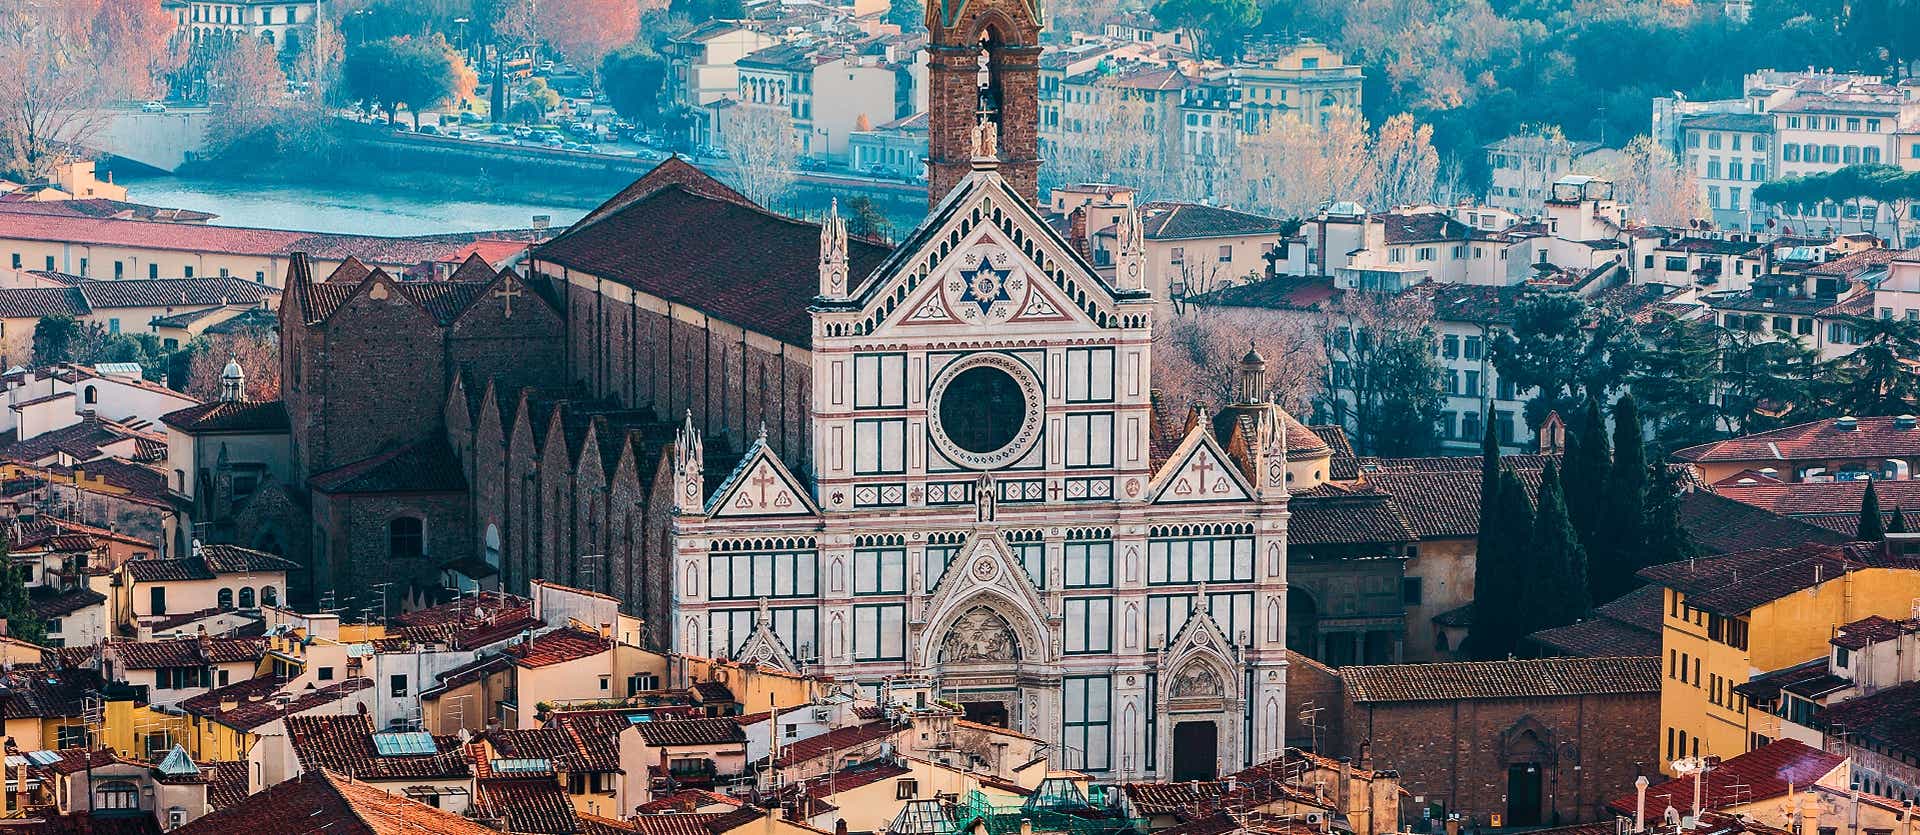 Basilica of Santa Croce  <span class="iconos separador"></span> Florence